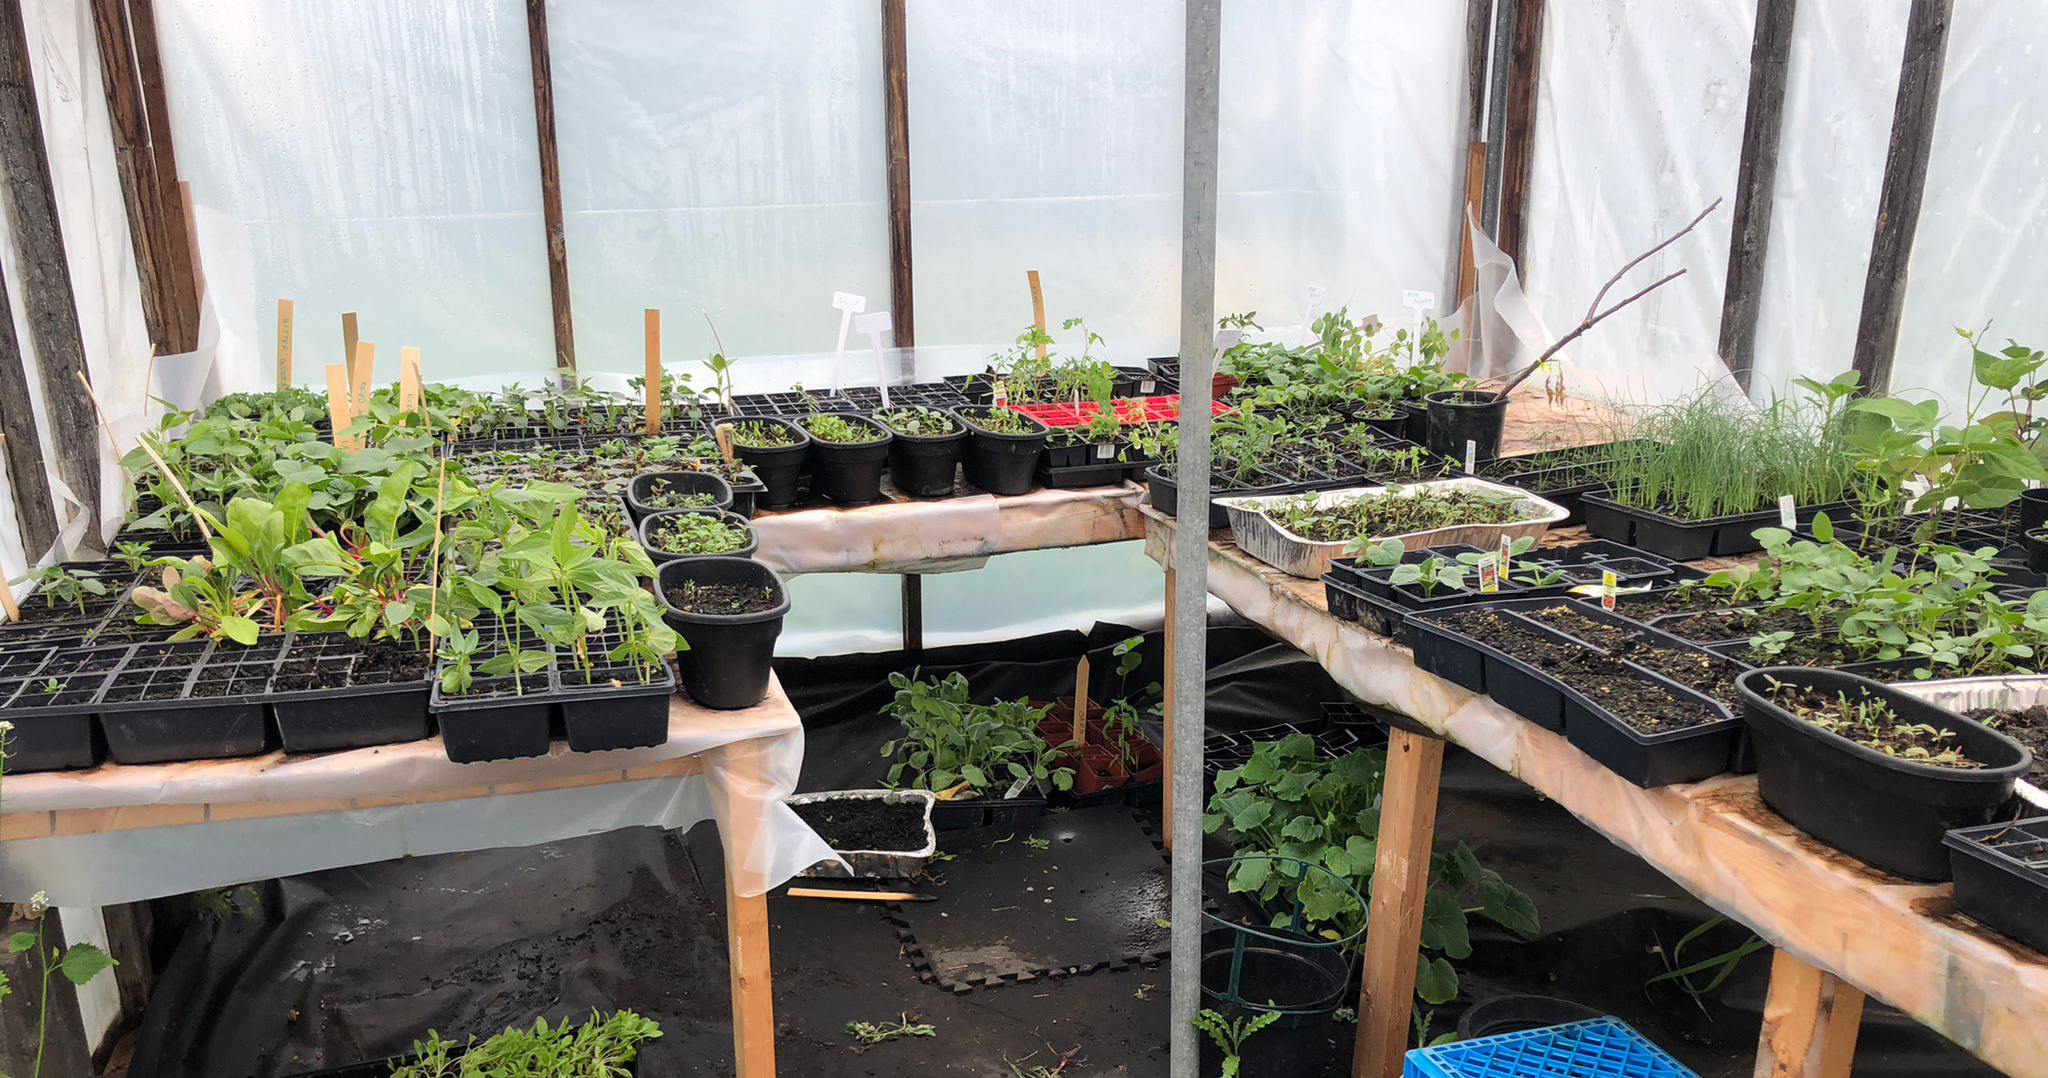 Veggie seedlings in the greenhouse